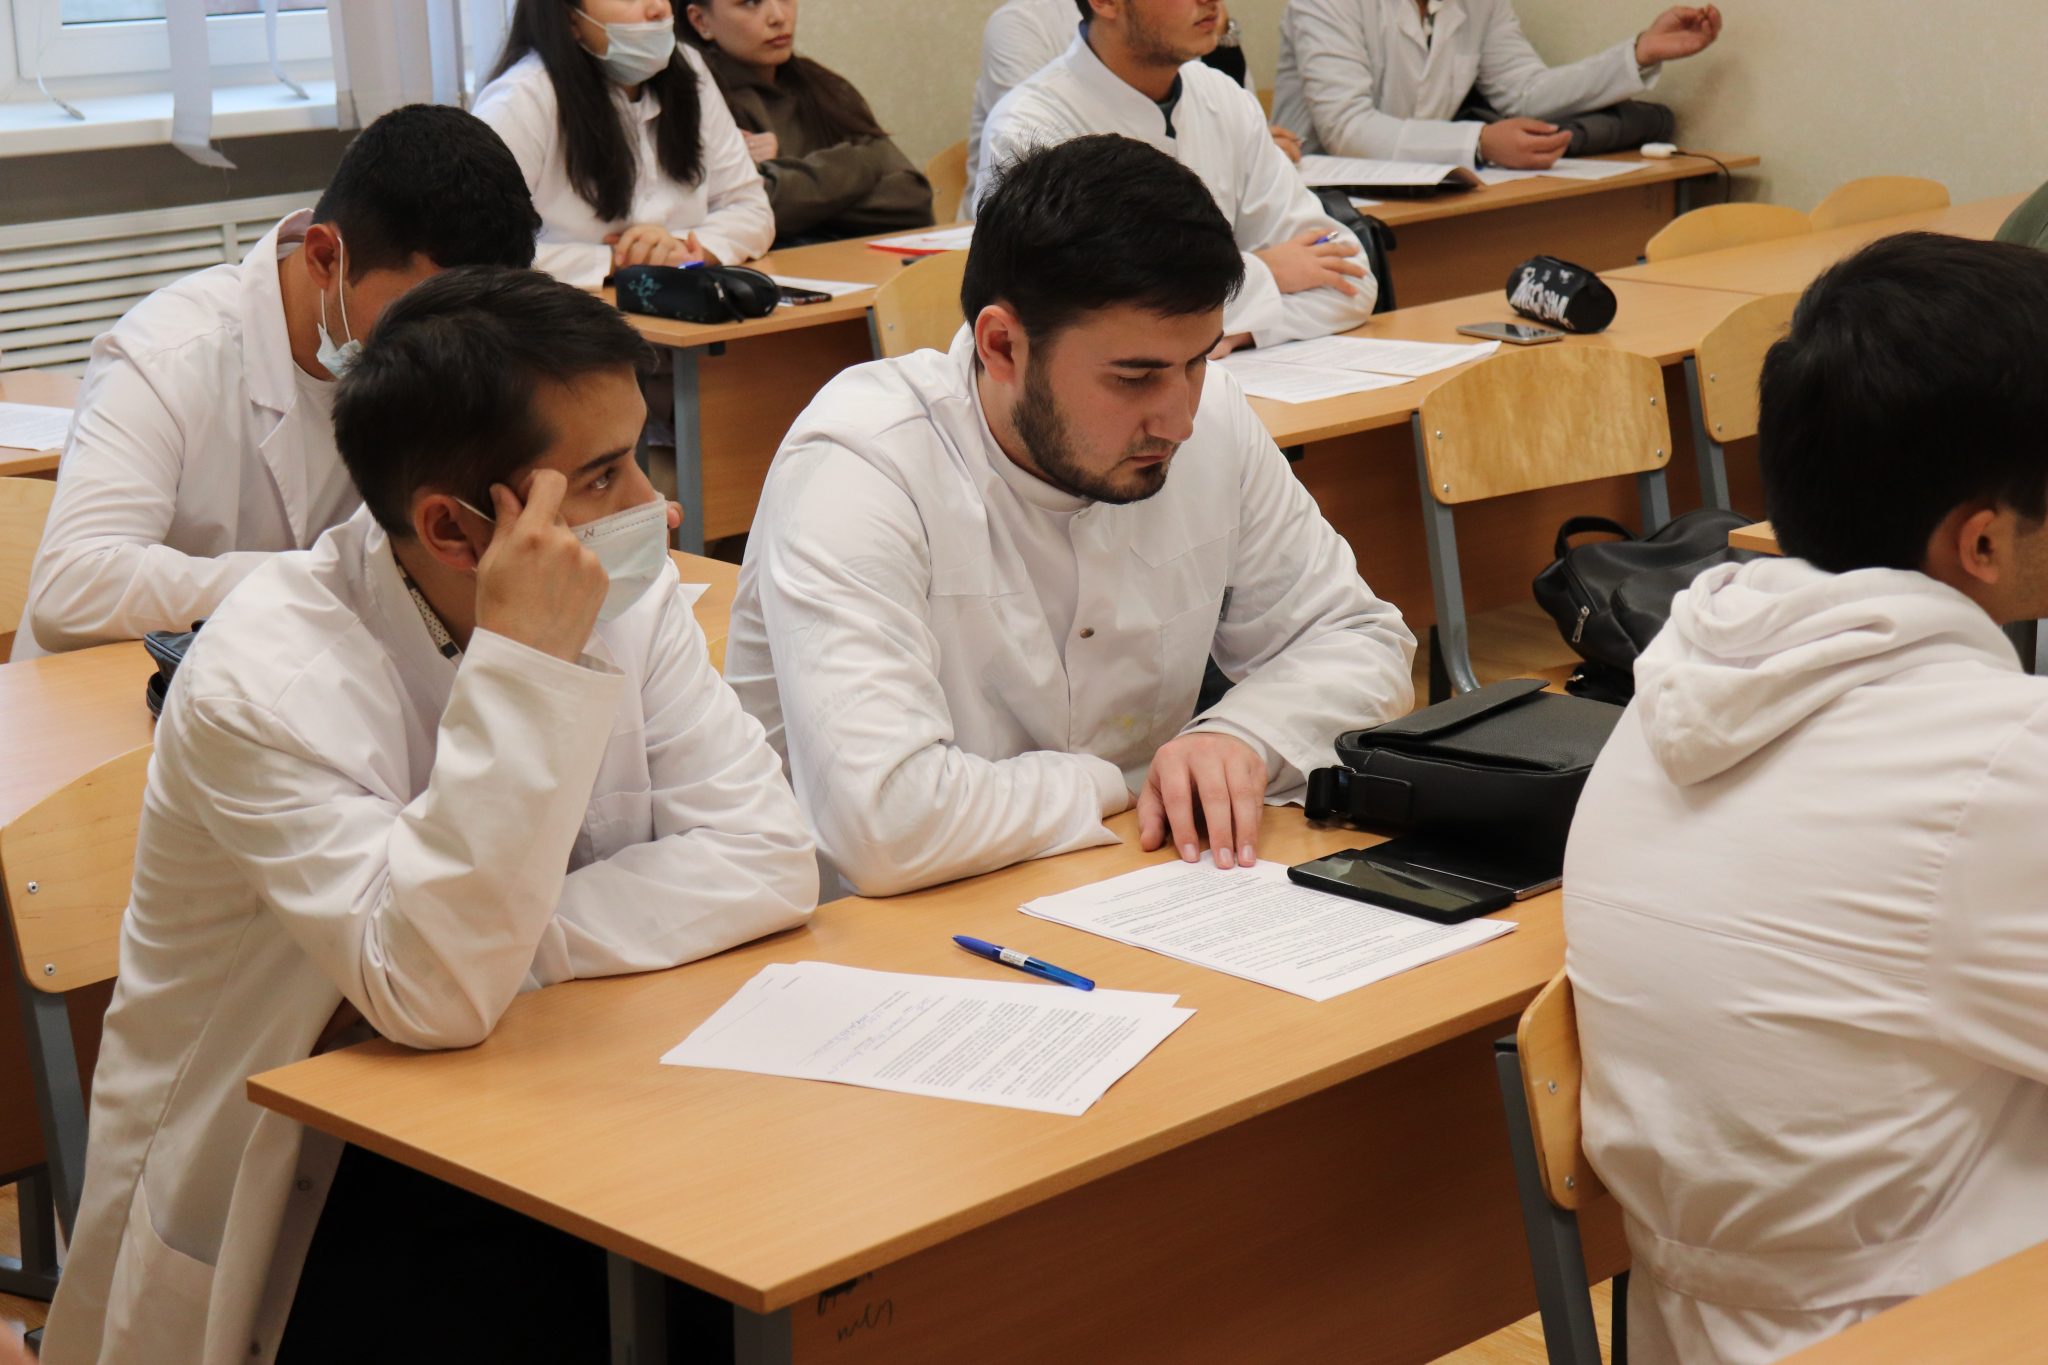 Медико-социальный институт Таджикистана. Методические занятия. Иностранные студенты в Дагестане. Иностранные студенты в Челябинске.